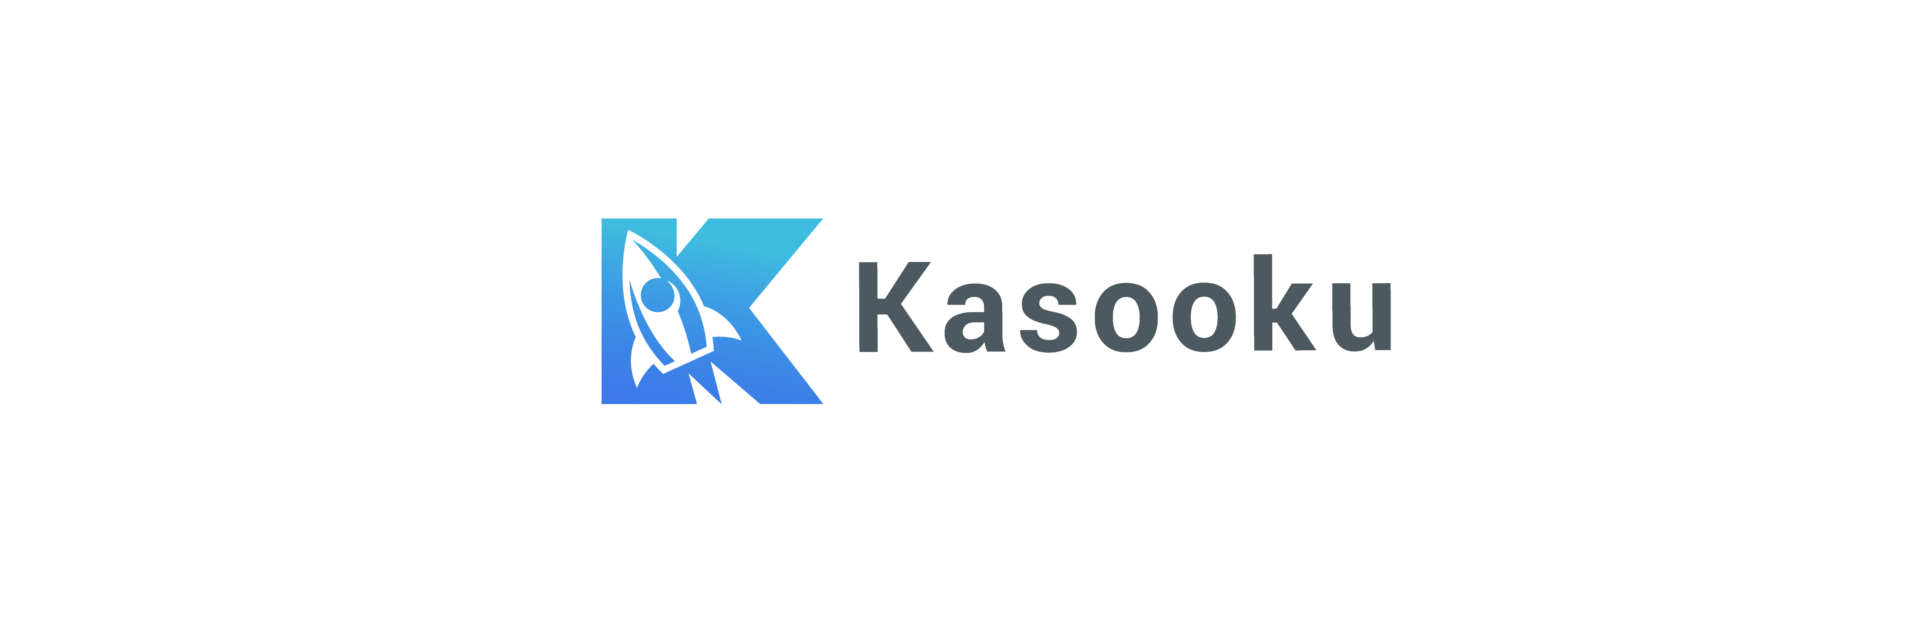 副業プラットフォーム「Kasooku」ロゴ